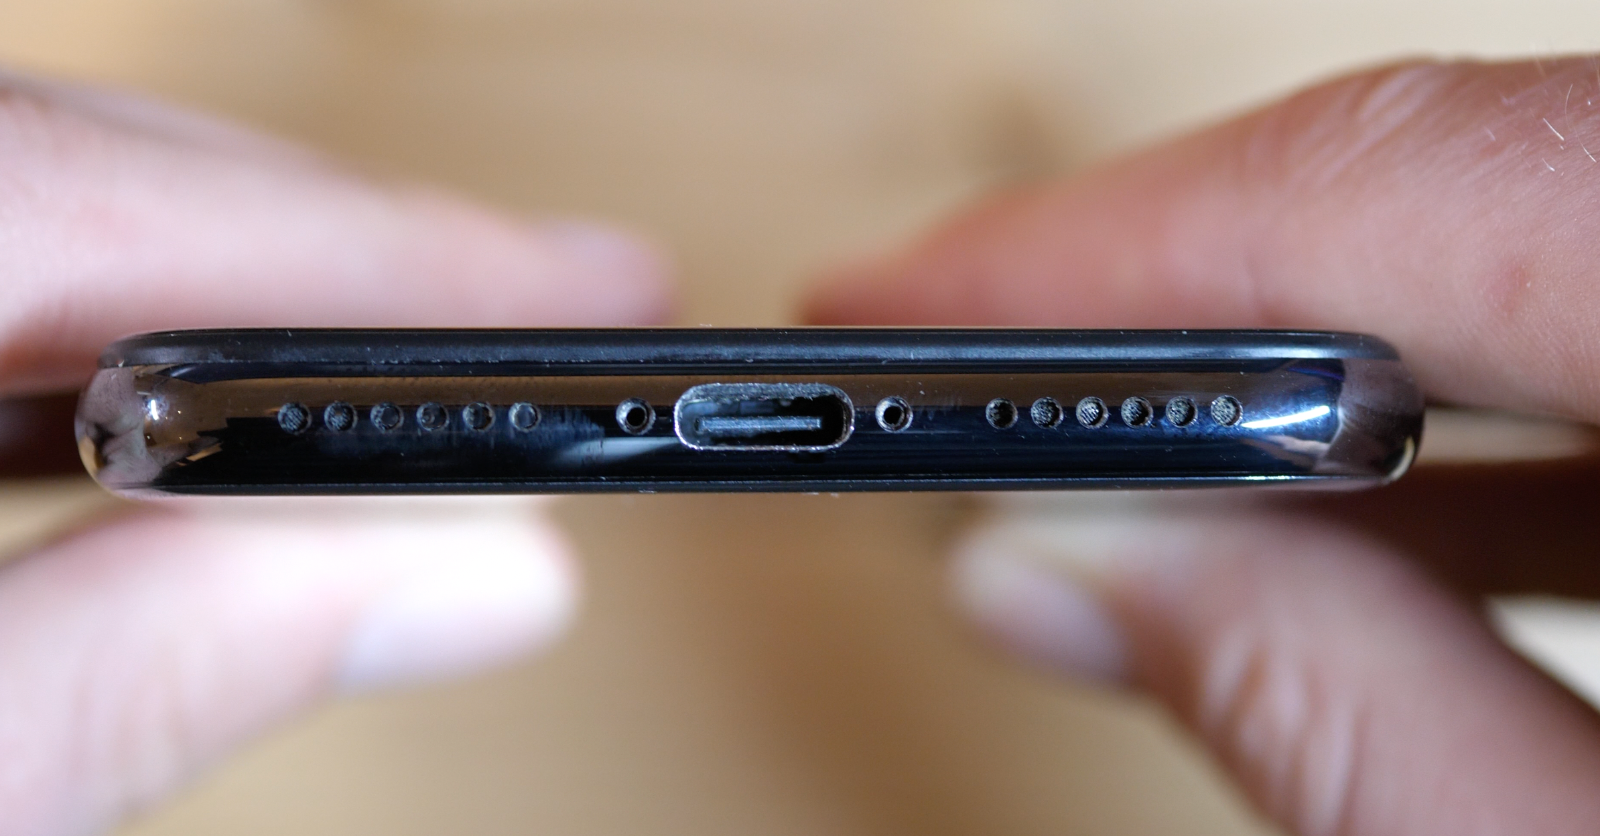 Slik ser bunnen av telefonen ut. Ikke akkurat skrammefri, men så er da også USB-C-inngangen en god del større enn Lightning-porten som kommer som standard på iPhone X.